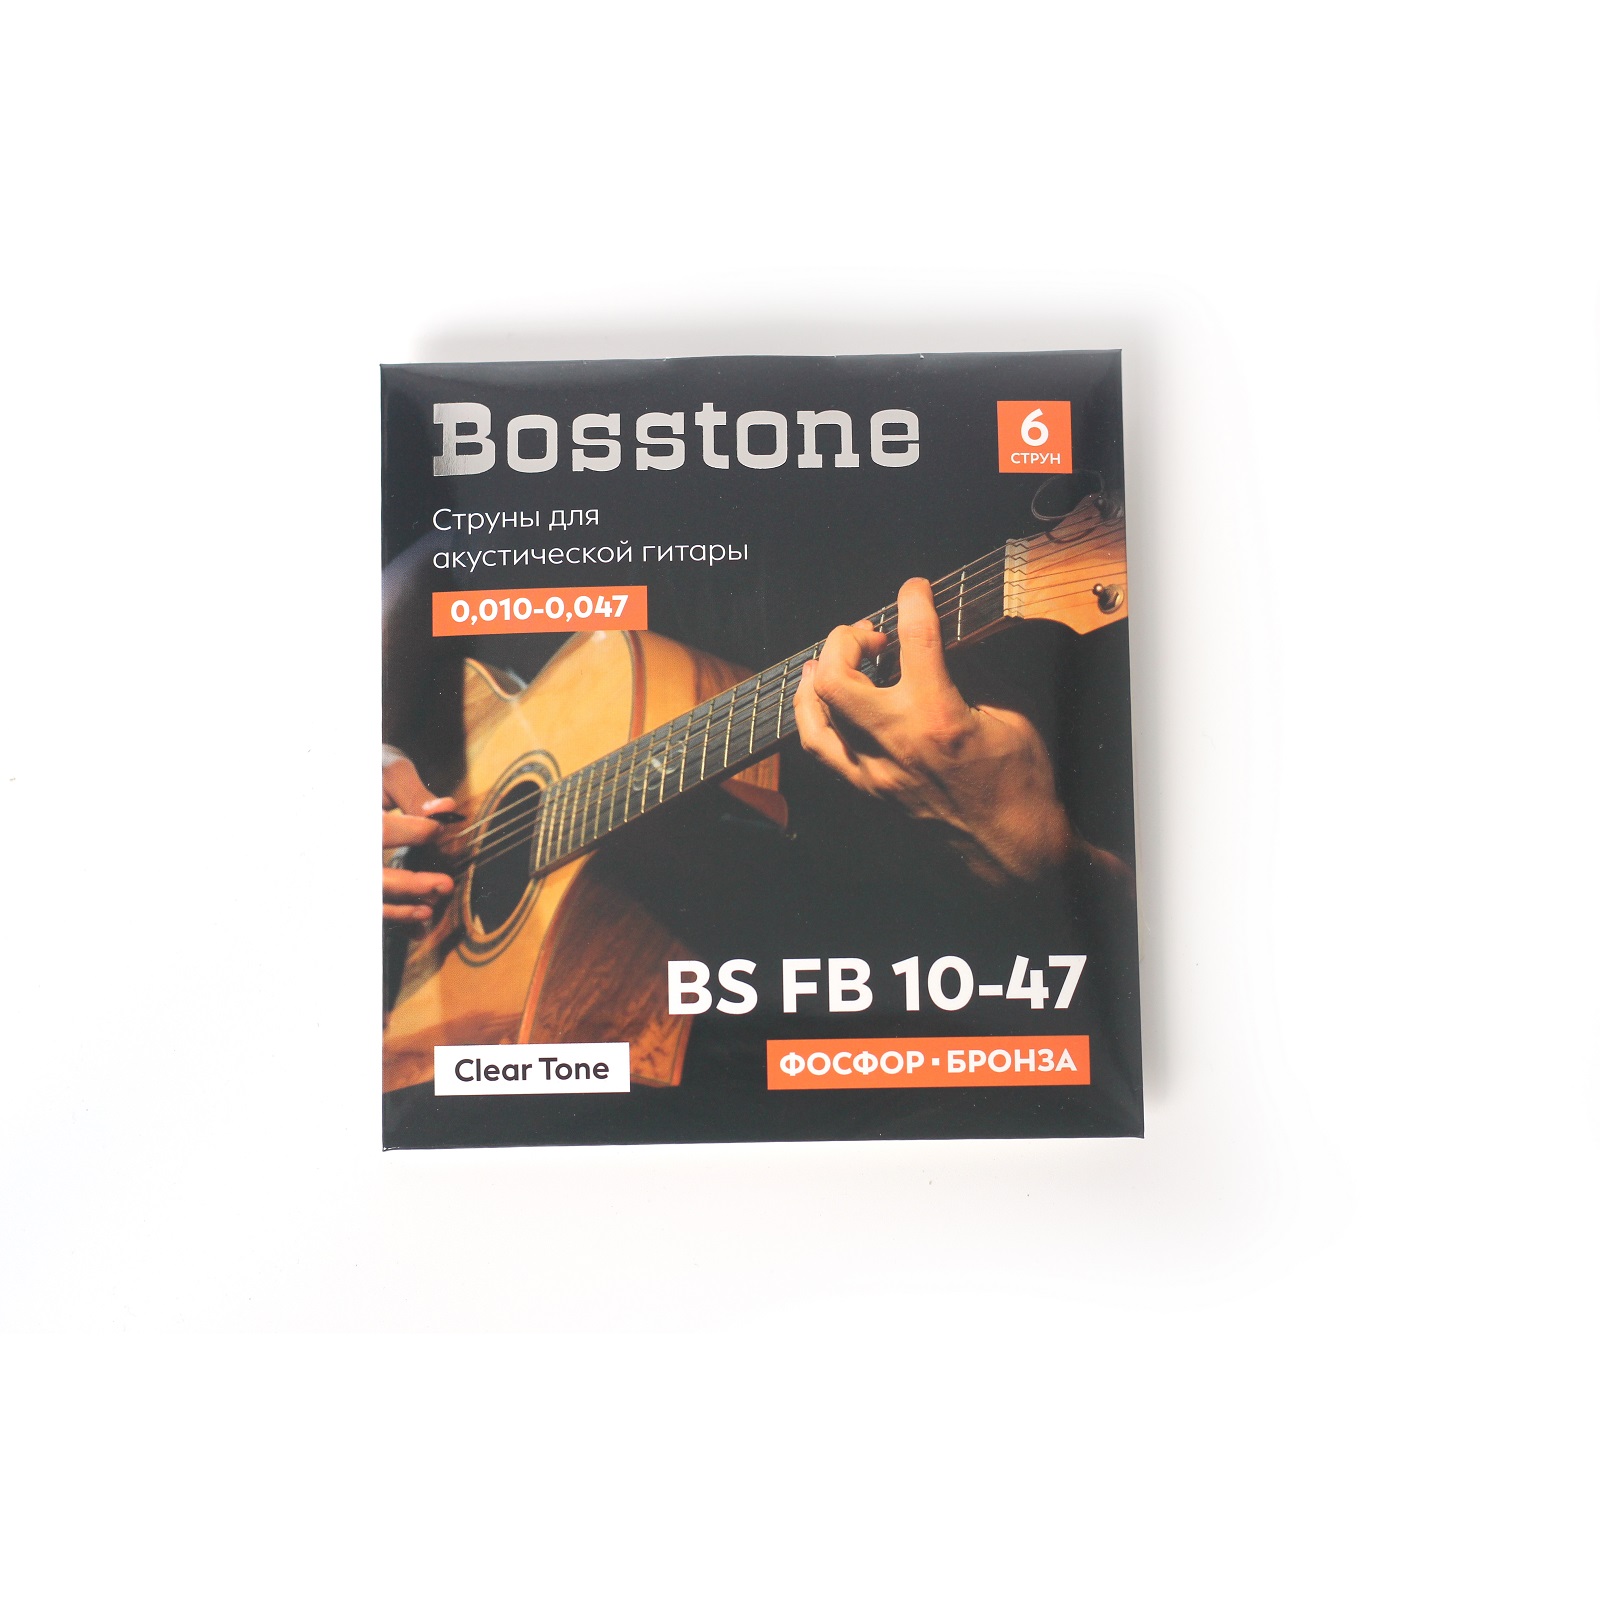 Bosstone BS FB10-47 Струны для акустической гитары фосфор бронза